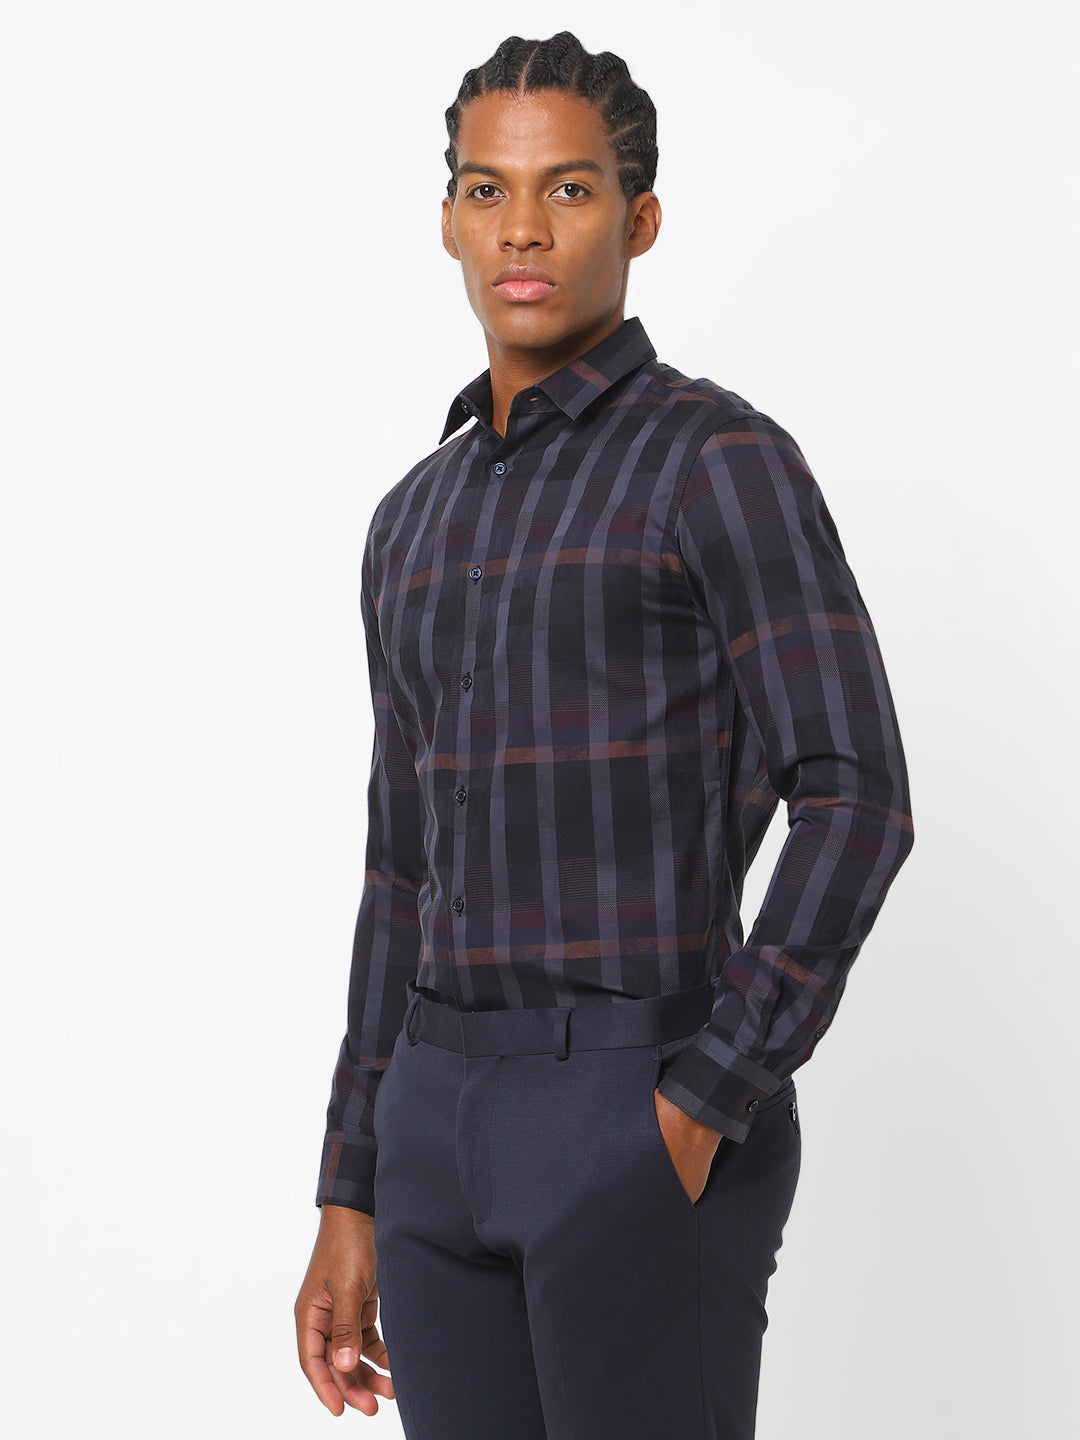 Men's Navy Blue Stretch Print Checkered Shirt